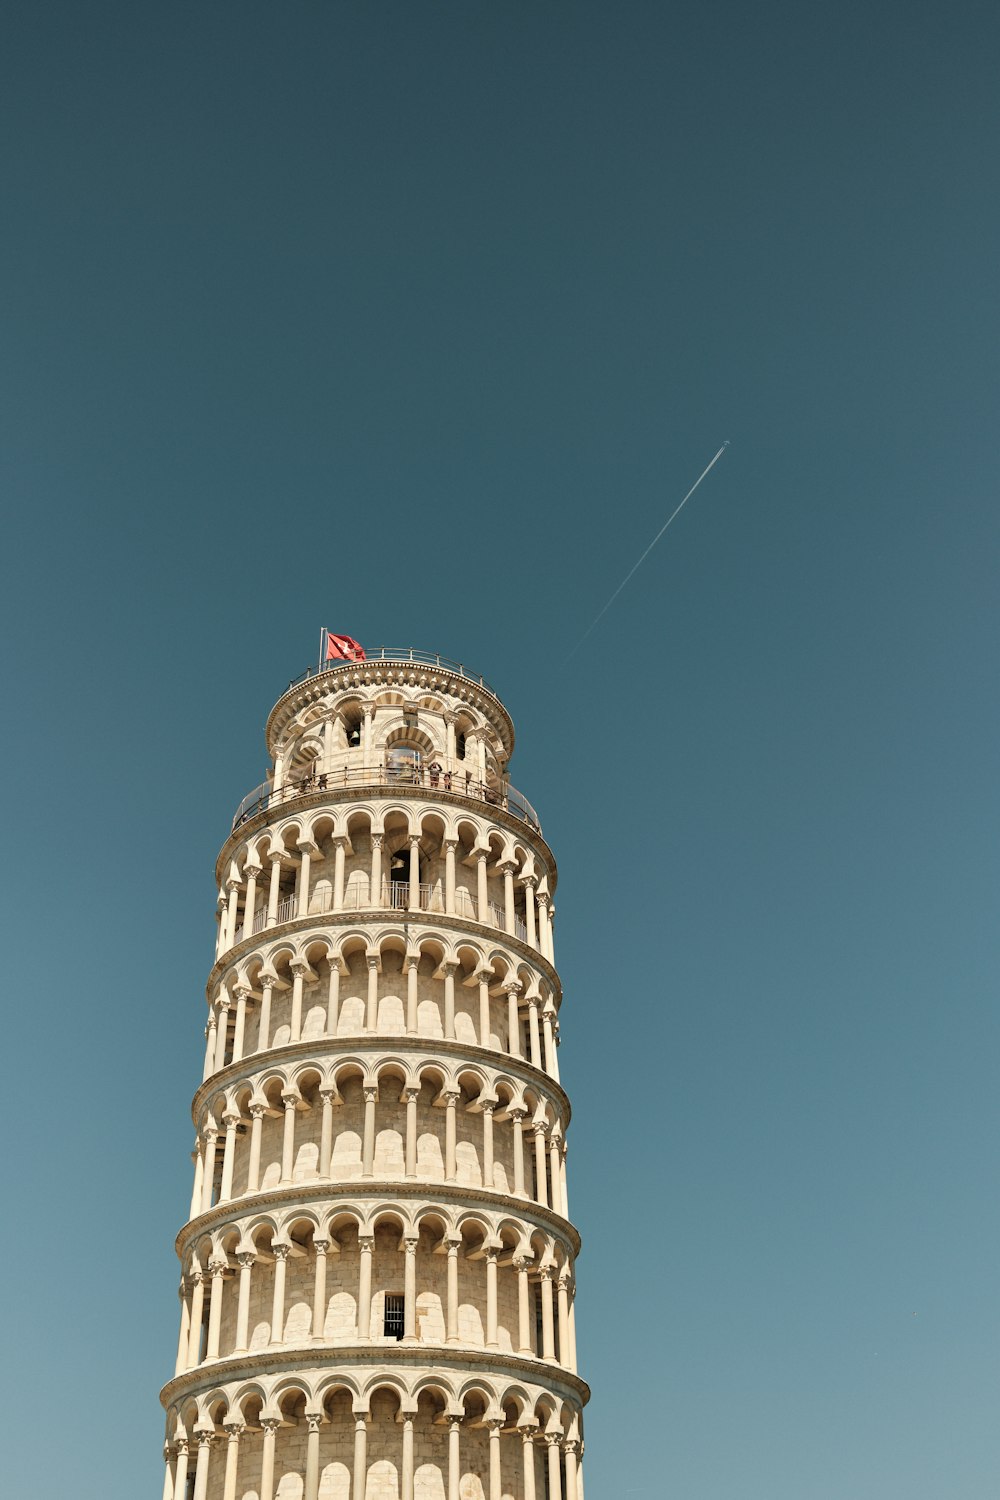 uma torre alta com uma bandeira no topo com a Torre Inclinada de Pisa no fundo